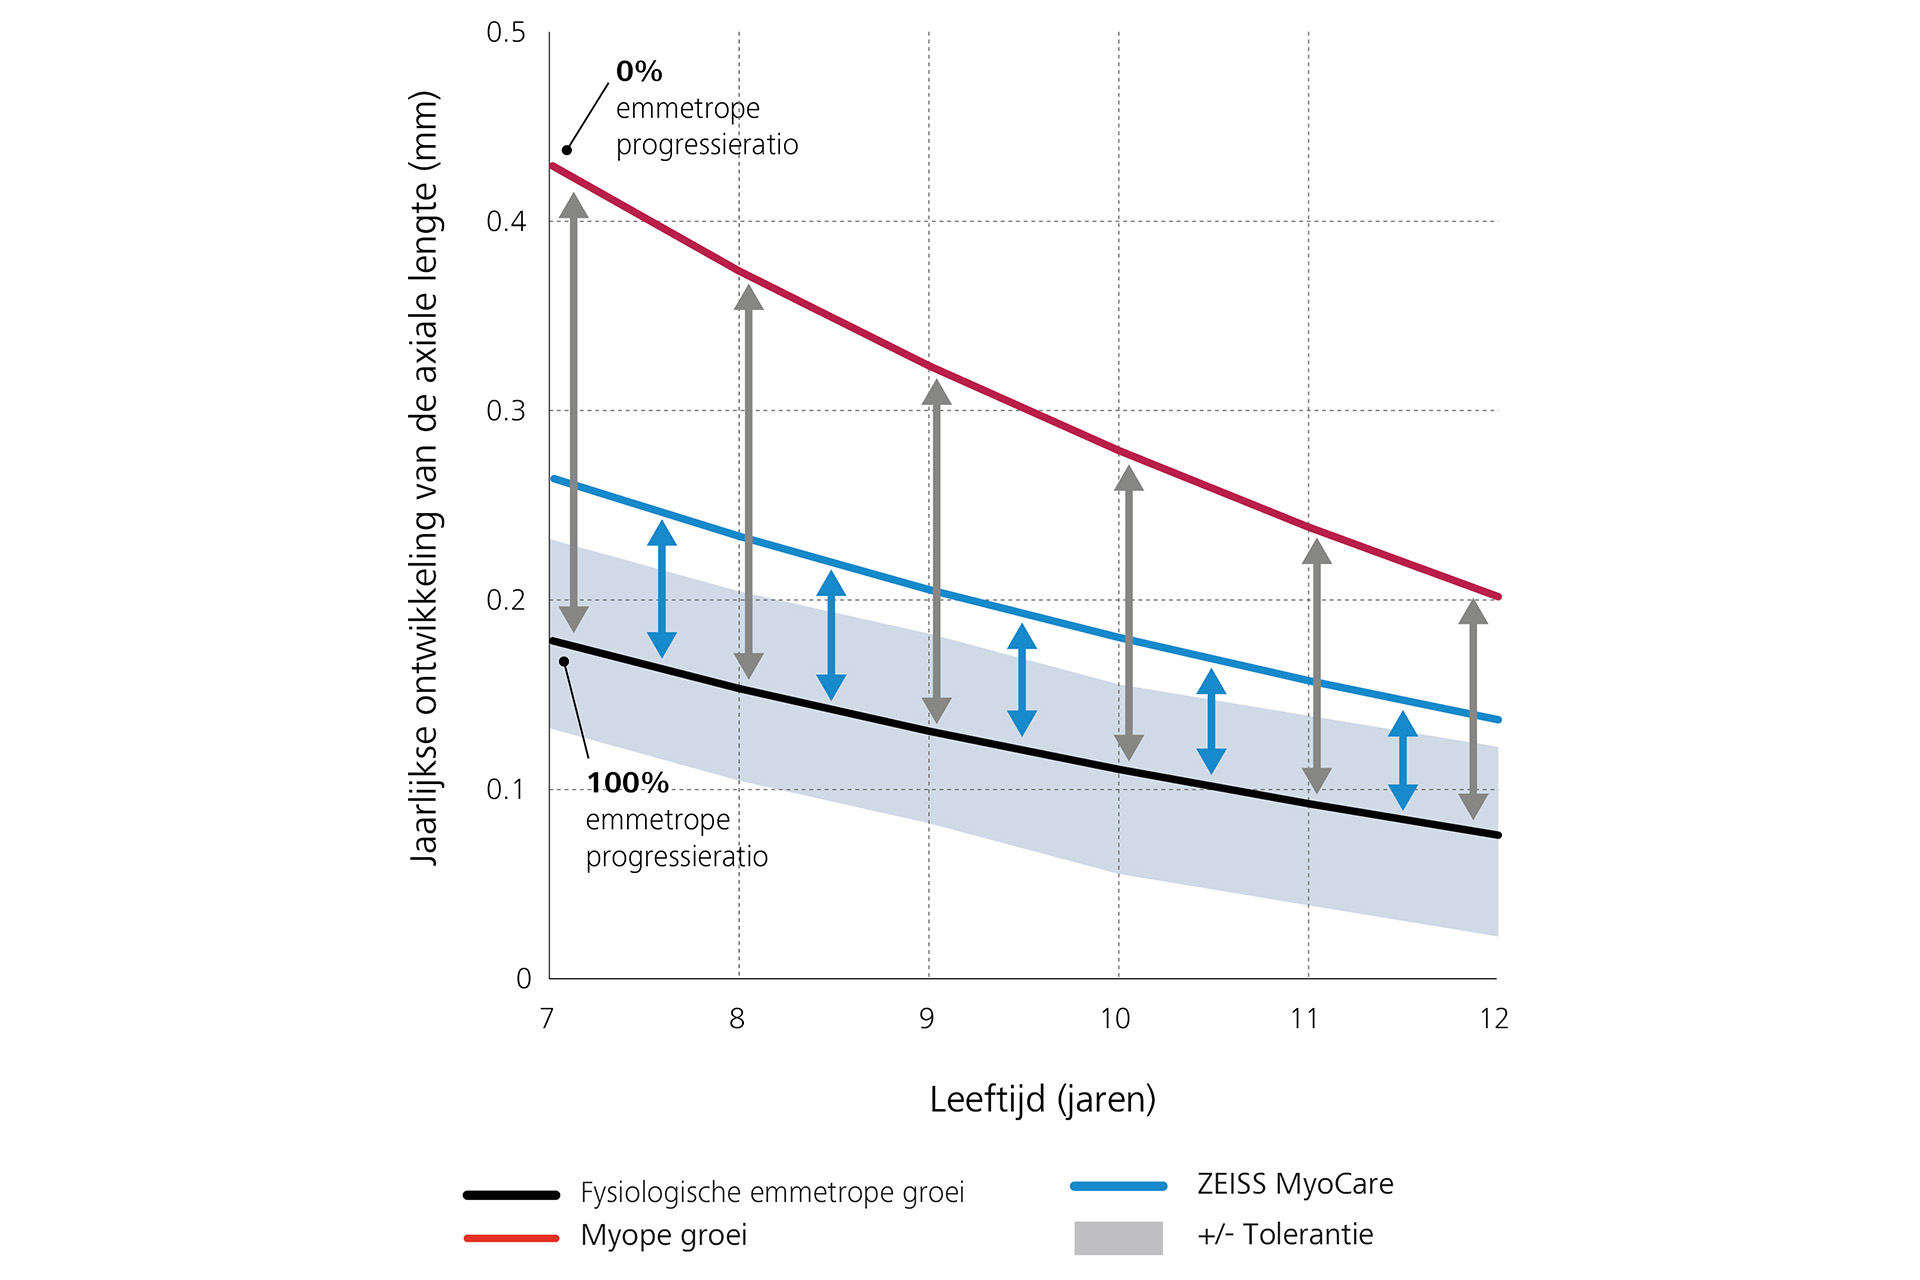 Een lijngrafiek die het jaarlijkse verloop van de axiale lengte weergeeft met onderaan in zwart de fysiologische emmetropische groei, bovenaan in rood de myopische groei en in het midden in blauw de resultaten voor ZEISS MyoCare brillenglazen. Uit deze grafiek is af te leiden dat de progressie van bijziendheid onder de myopische groeicurve ligt als ZEISS MyoCare brillenglazen worden gedragen.  